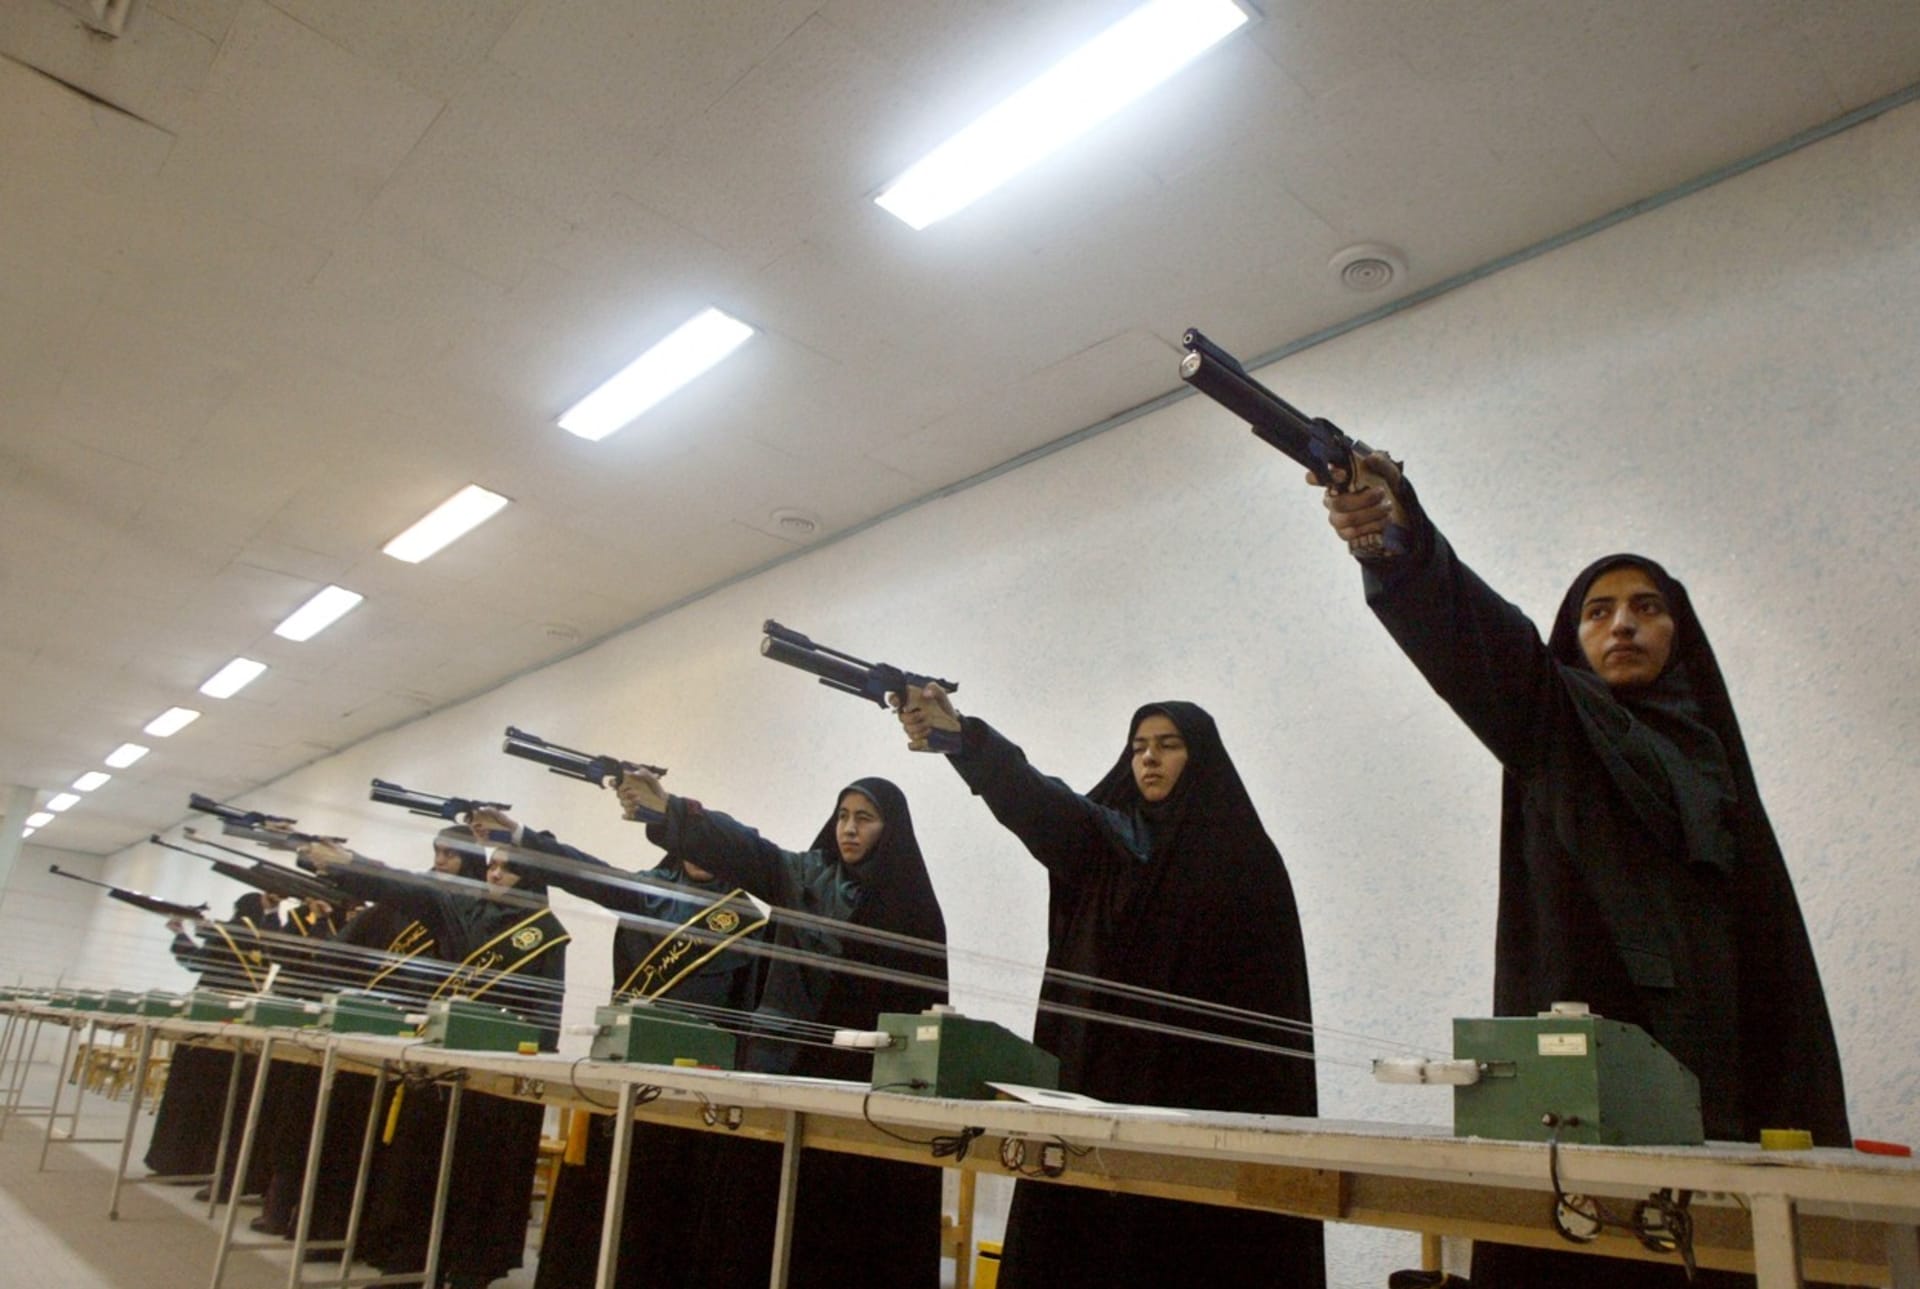 Policistky trénují střelbu na policejní akademii v Teheránu (12. 3. 2005).